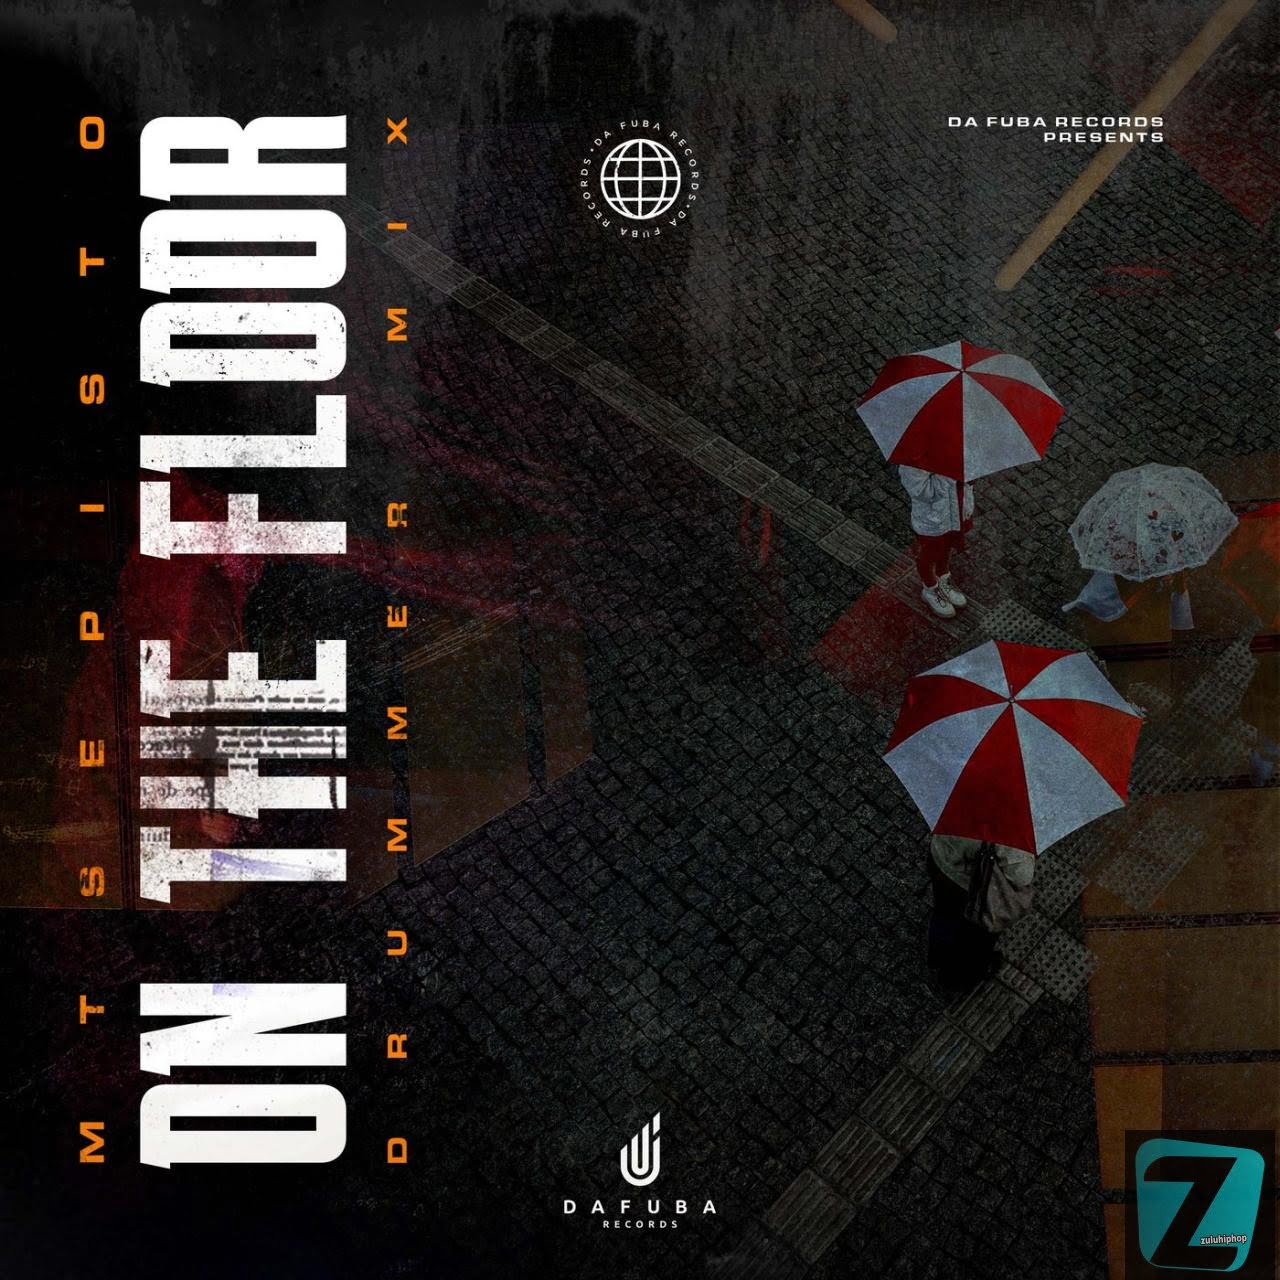 Mtsepisto – On The Floor (Drummer Mix)